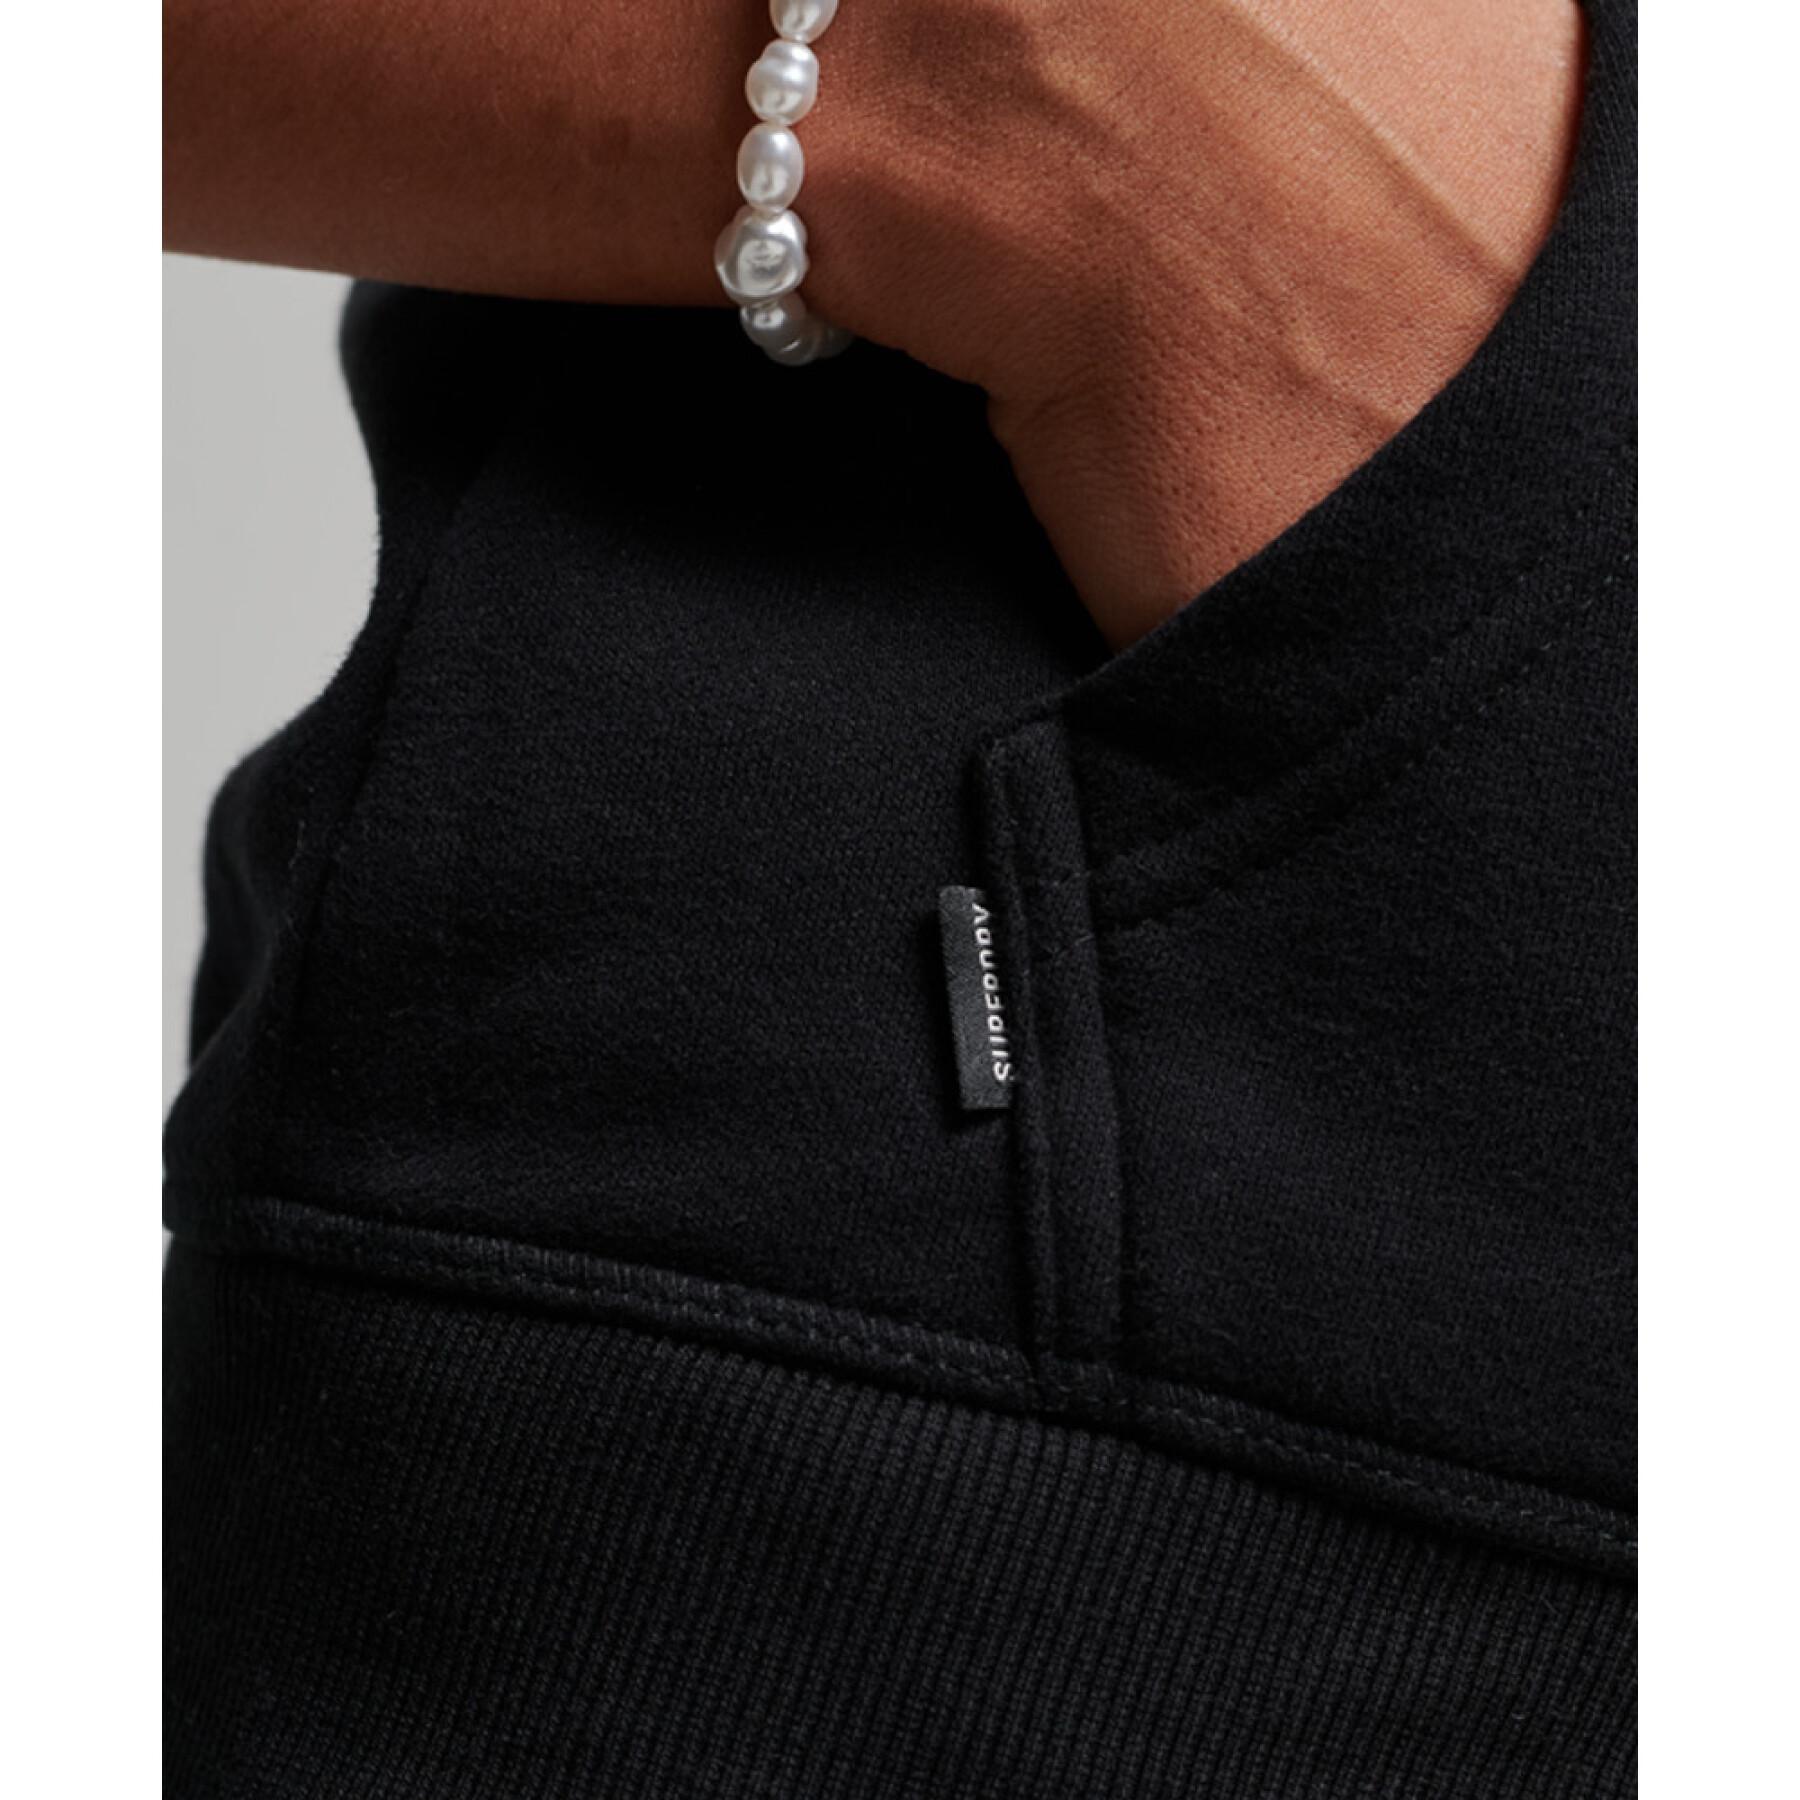 Sweatshirt felpa con cappuccio e zip da donna con ricamo Superdry Vintage Logo